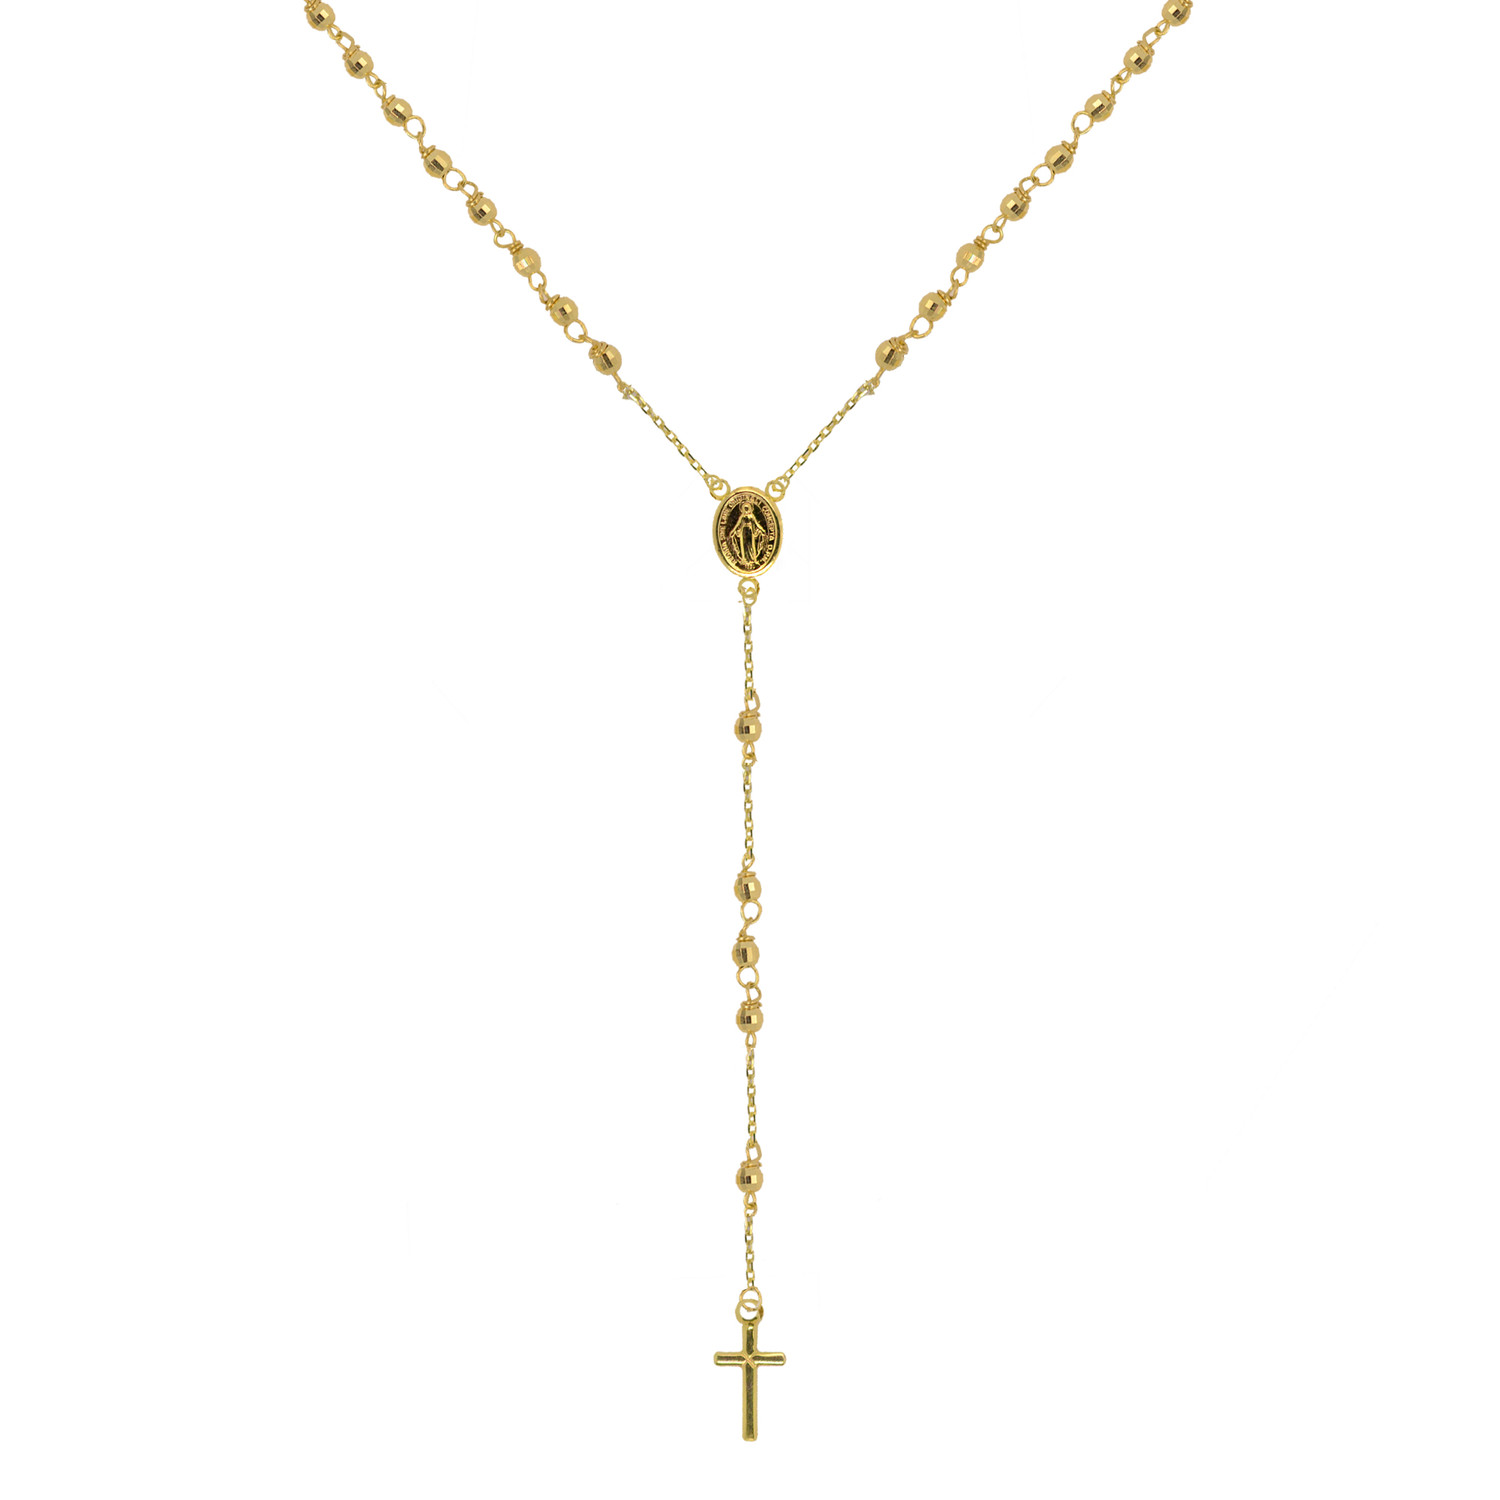 Evolution Group Zlatý 14 karátový náhrdelník růženec s křížem a medailonkem s Pannou Marií RŽ12 zlatý